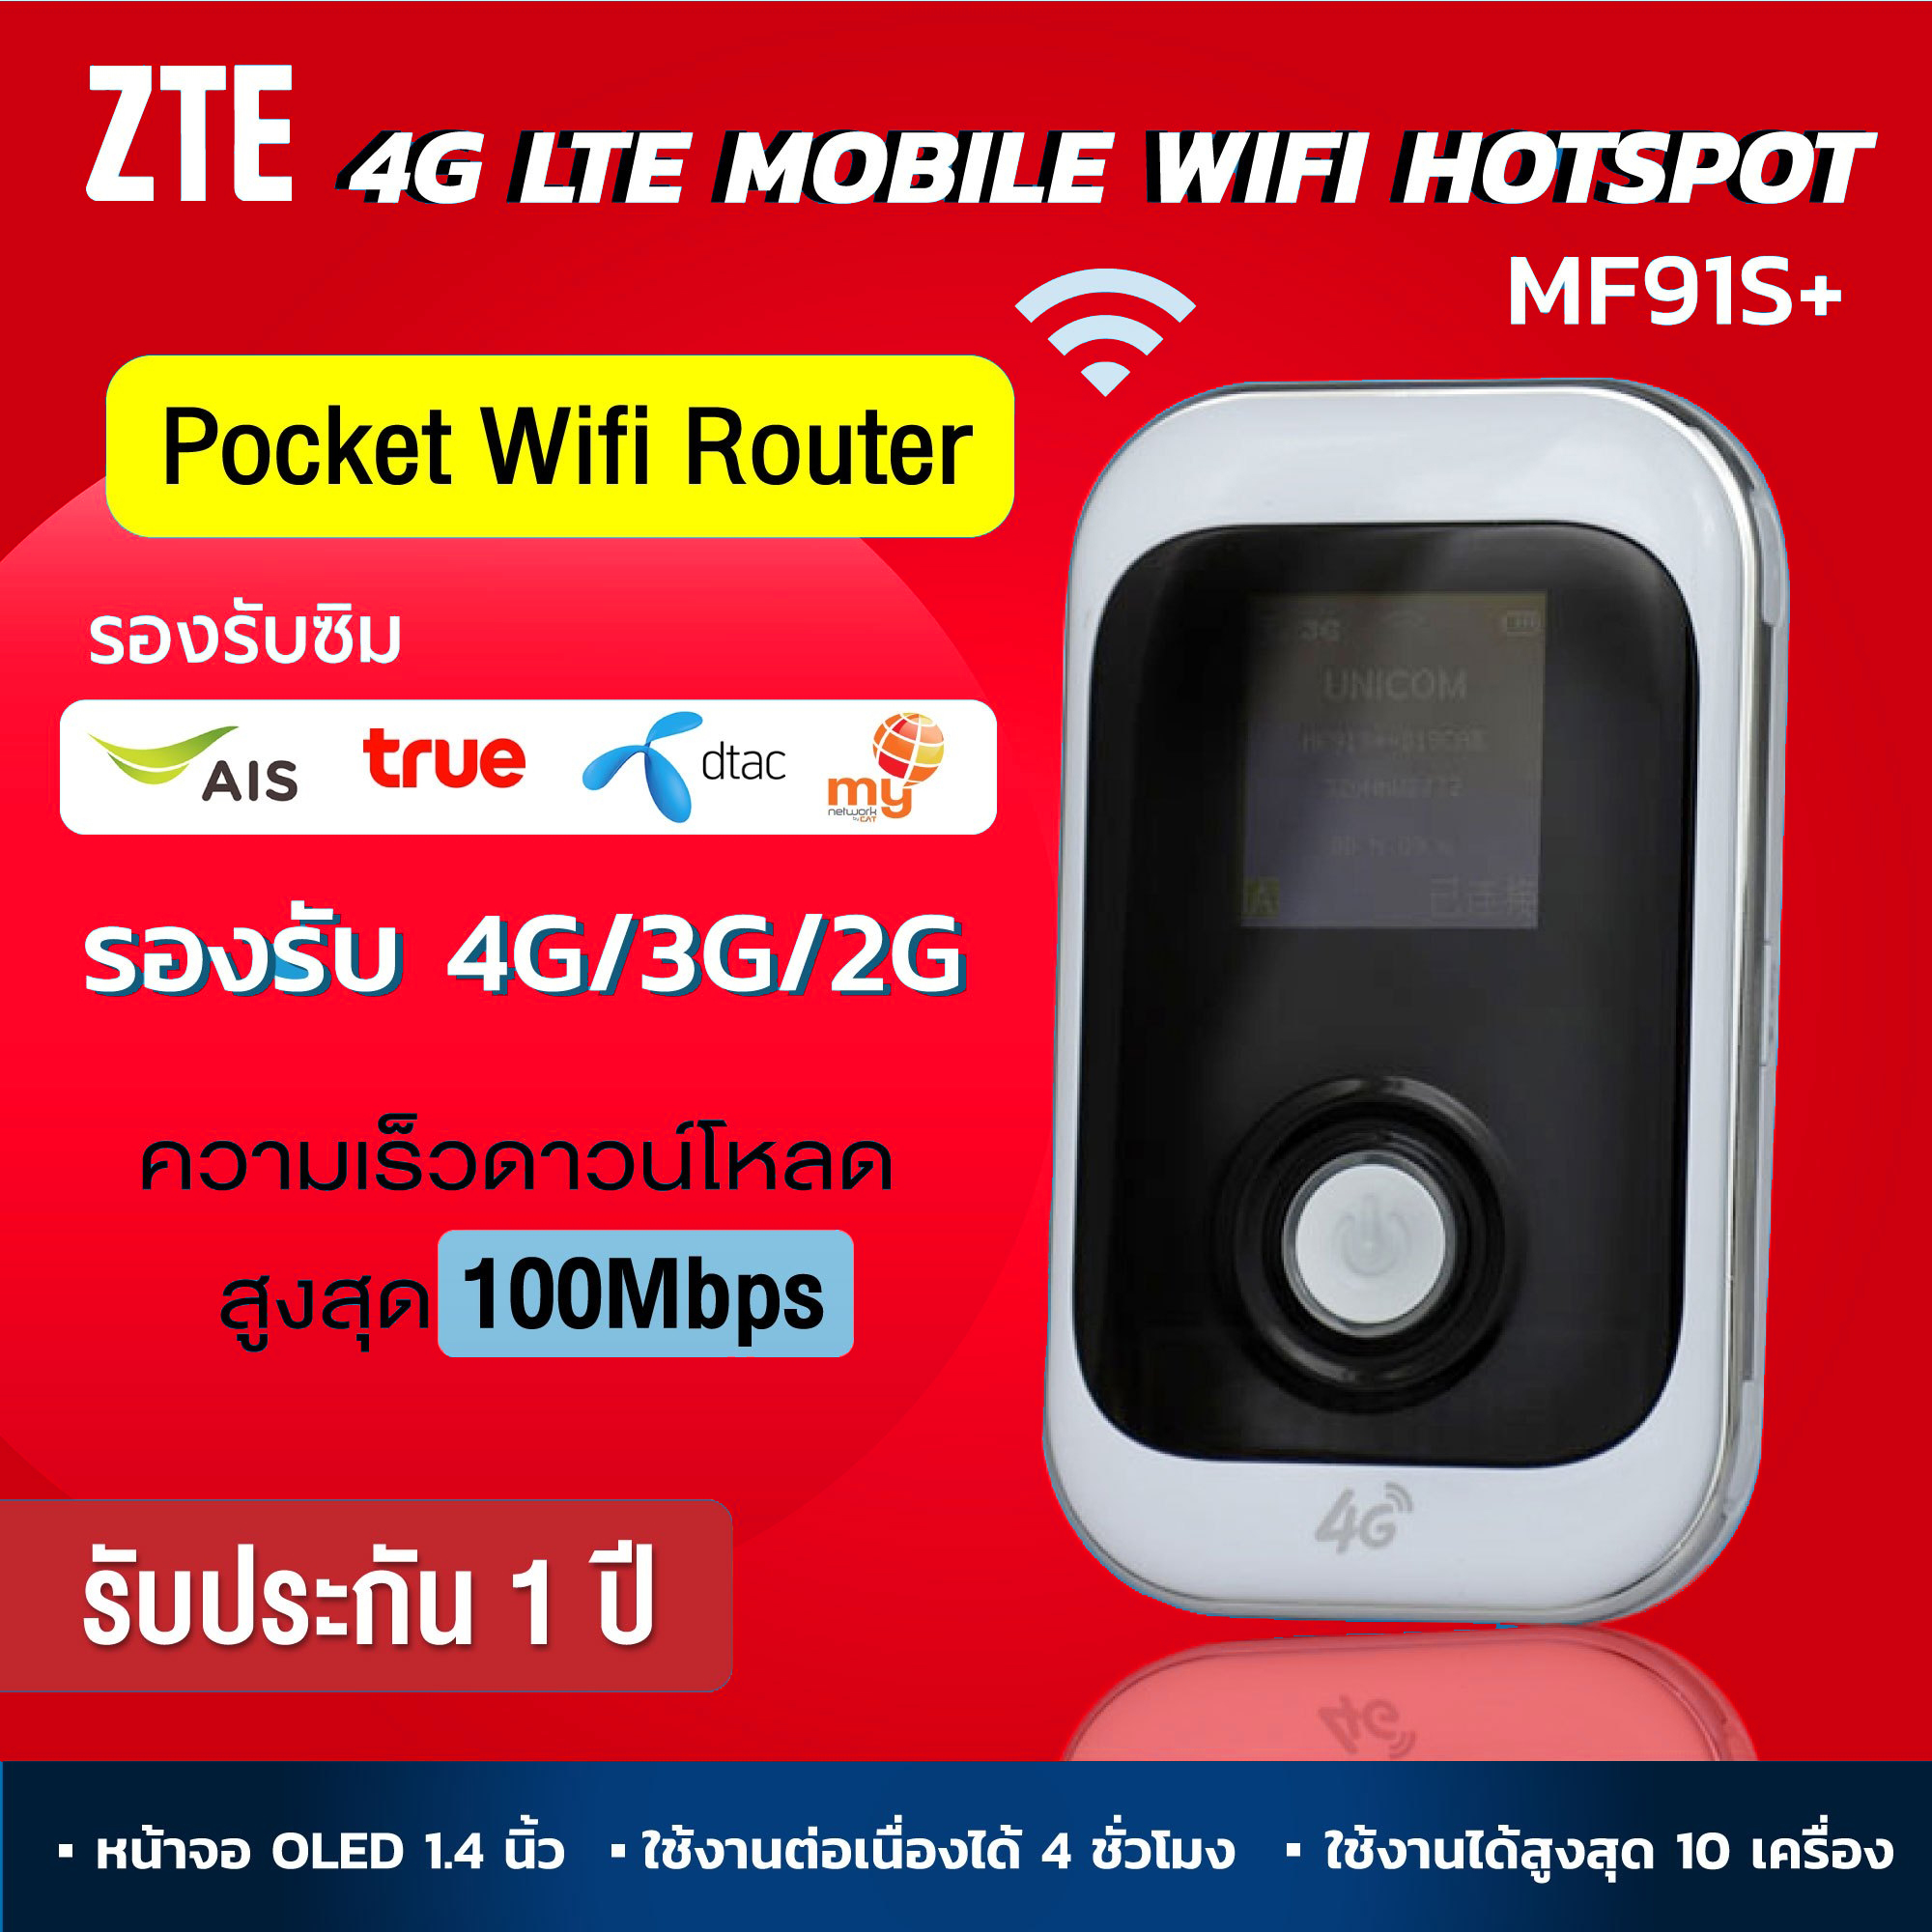 Pocket WiFi 4G ZTE รุ่น MF91S+ ความเร็ว 150 Mbps ใช้ได้ทุกซิม ใช้ได้กับ AIS/DTAC/TRUE น้ำหนักเบา พกพาง่าย แอร์การ์ด โมบายไวไฟ ไวไฟพกพา ของแท้ ส่งไว ประกัน 1 ปี